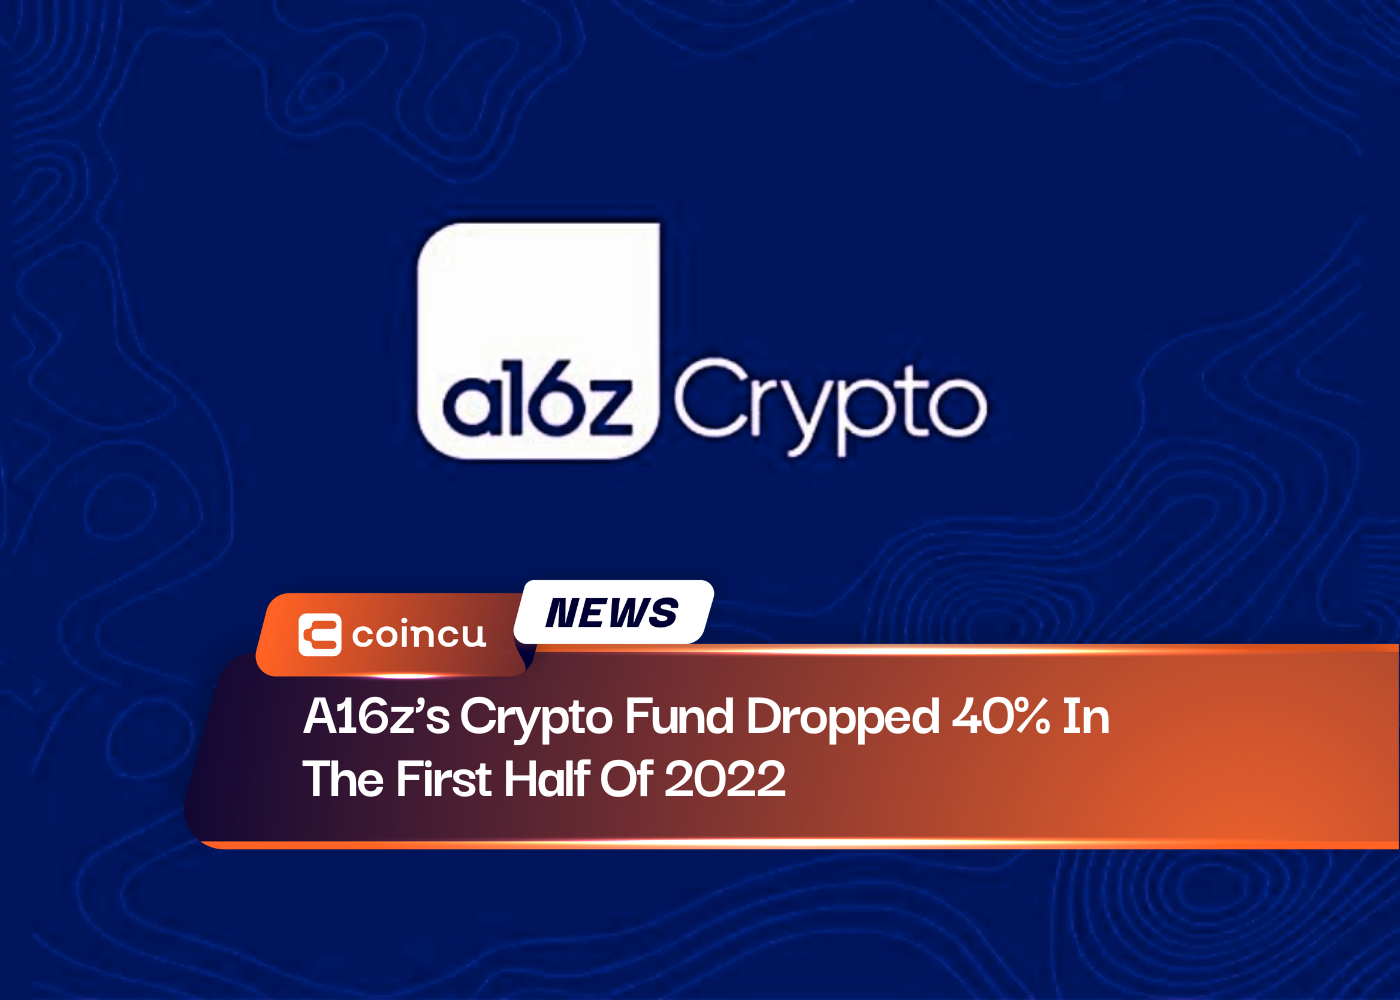 Le fonds crypto d'A16z a chuté de 40 % au premier semestre 2022